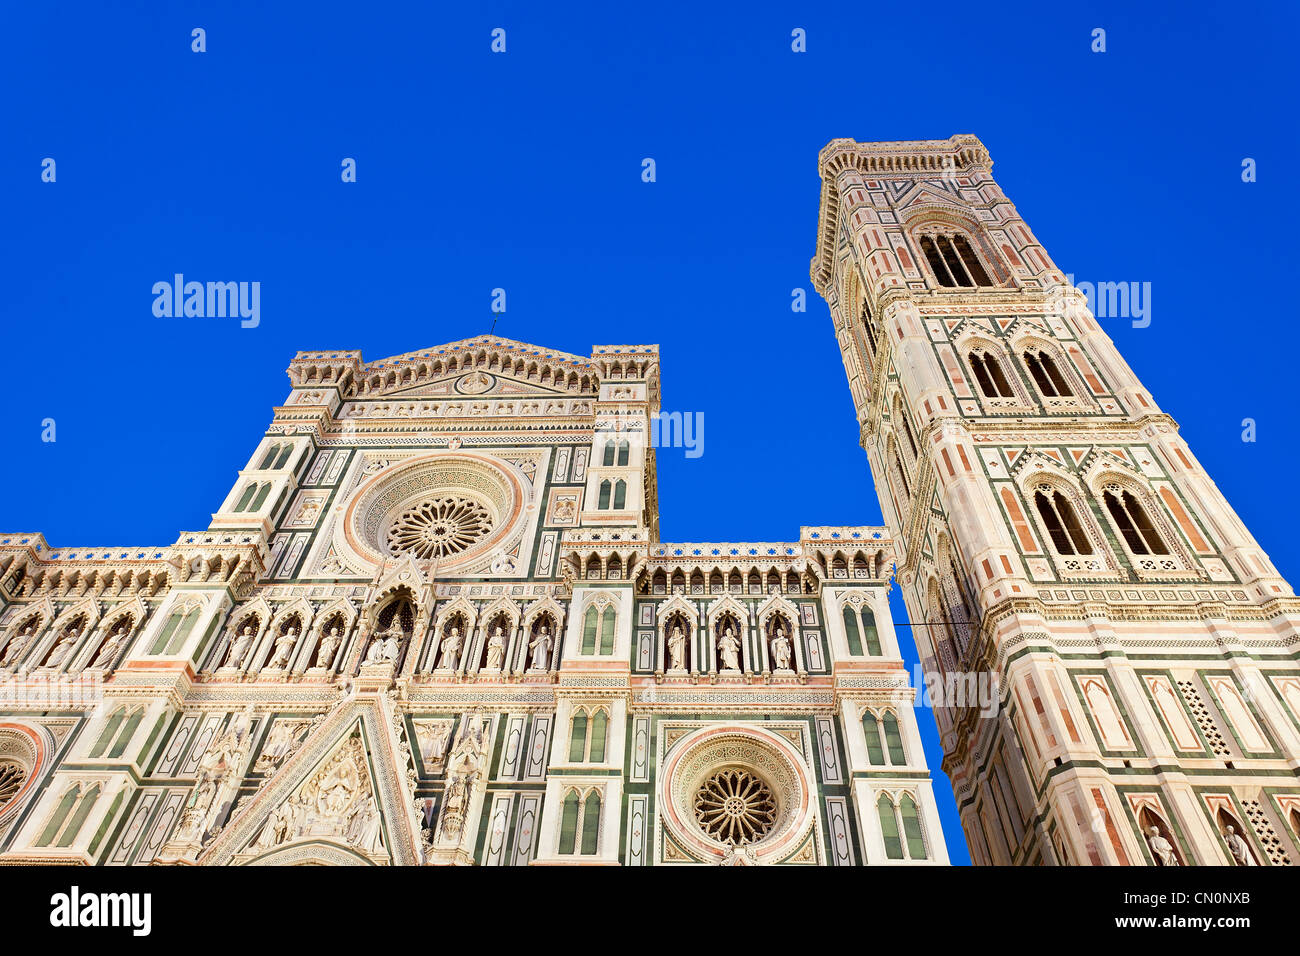 Italy, Florence, Duomo Santa Maria del Fiore at Dusk Stock Photo